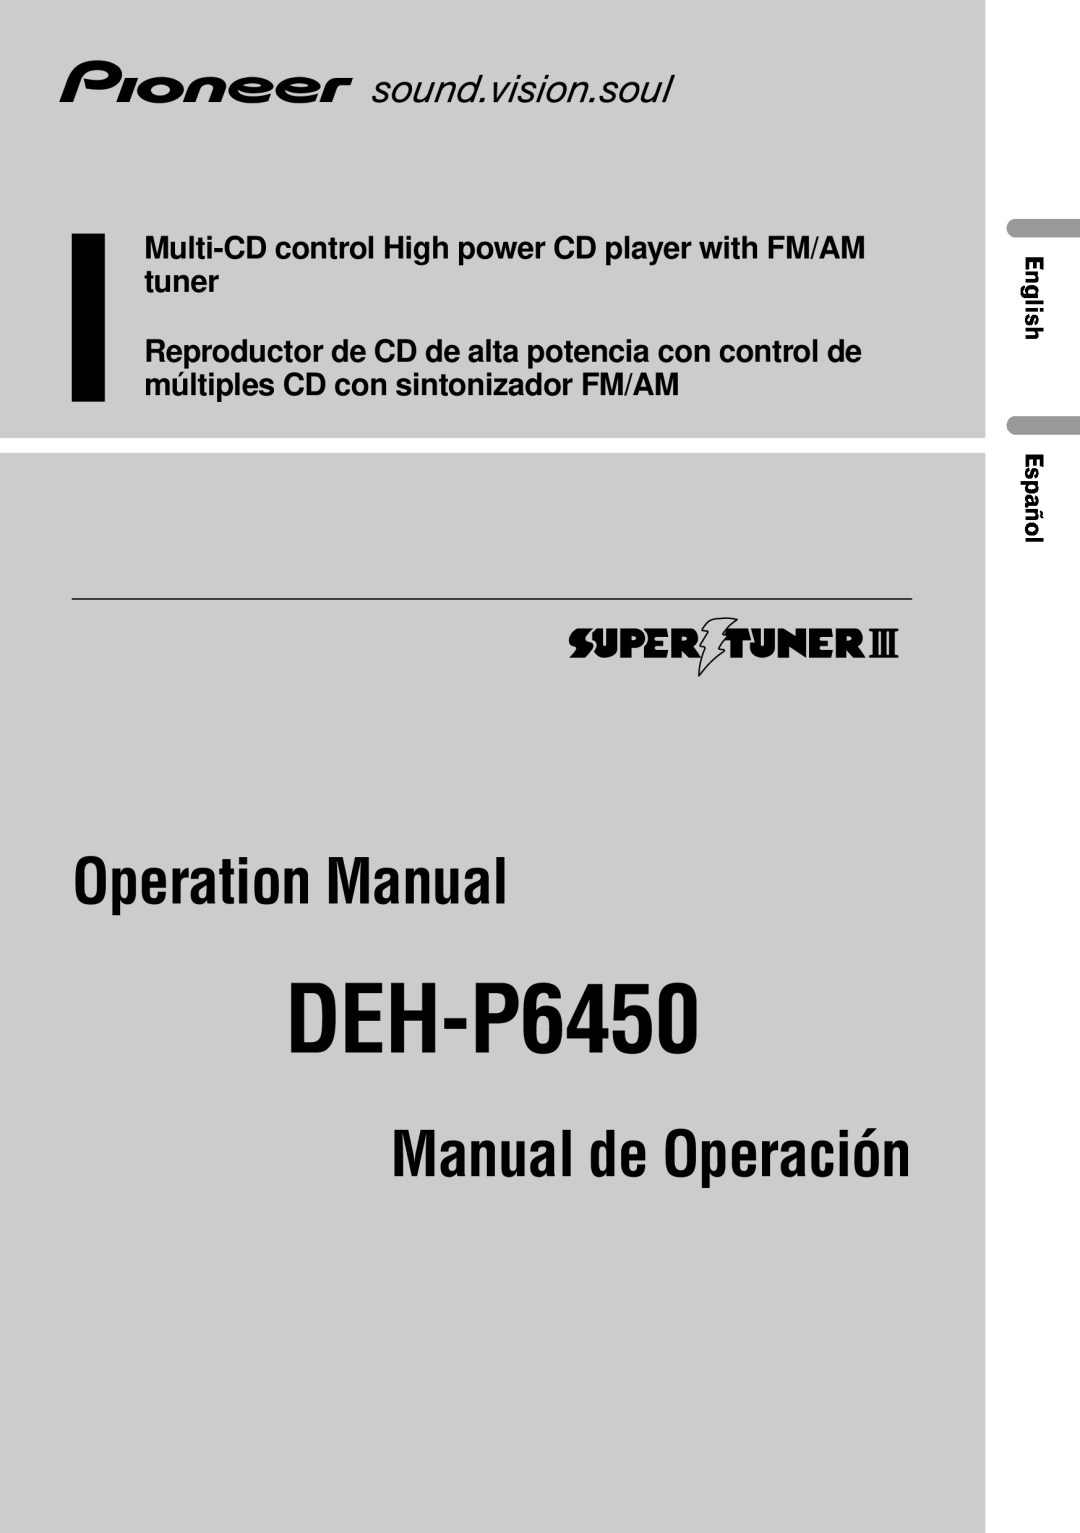 Pioneer DEH-P6450 operation manual English Español, Manual de Operación 